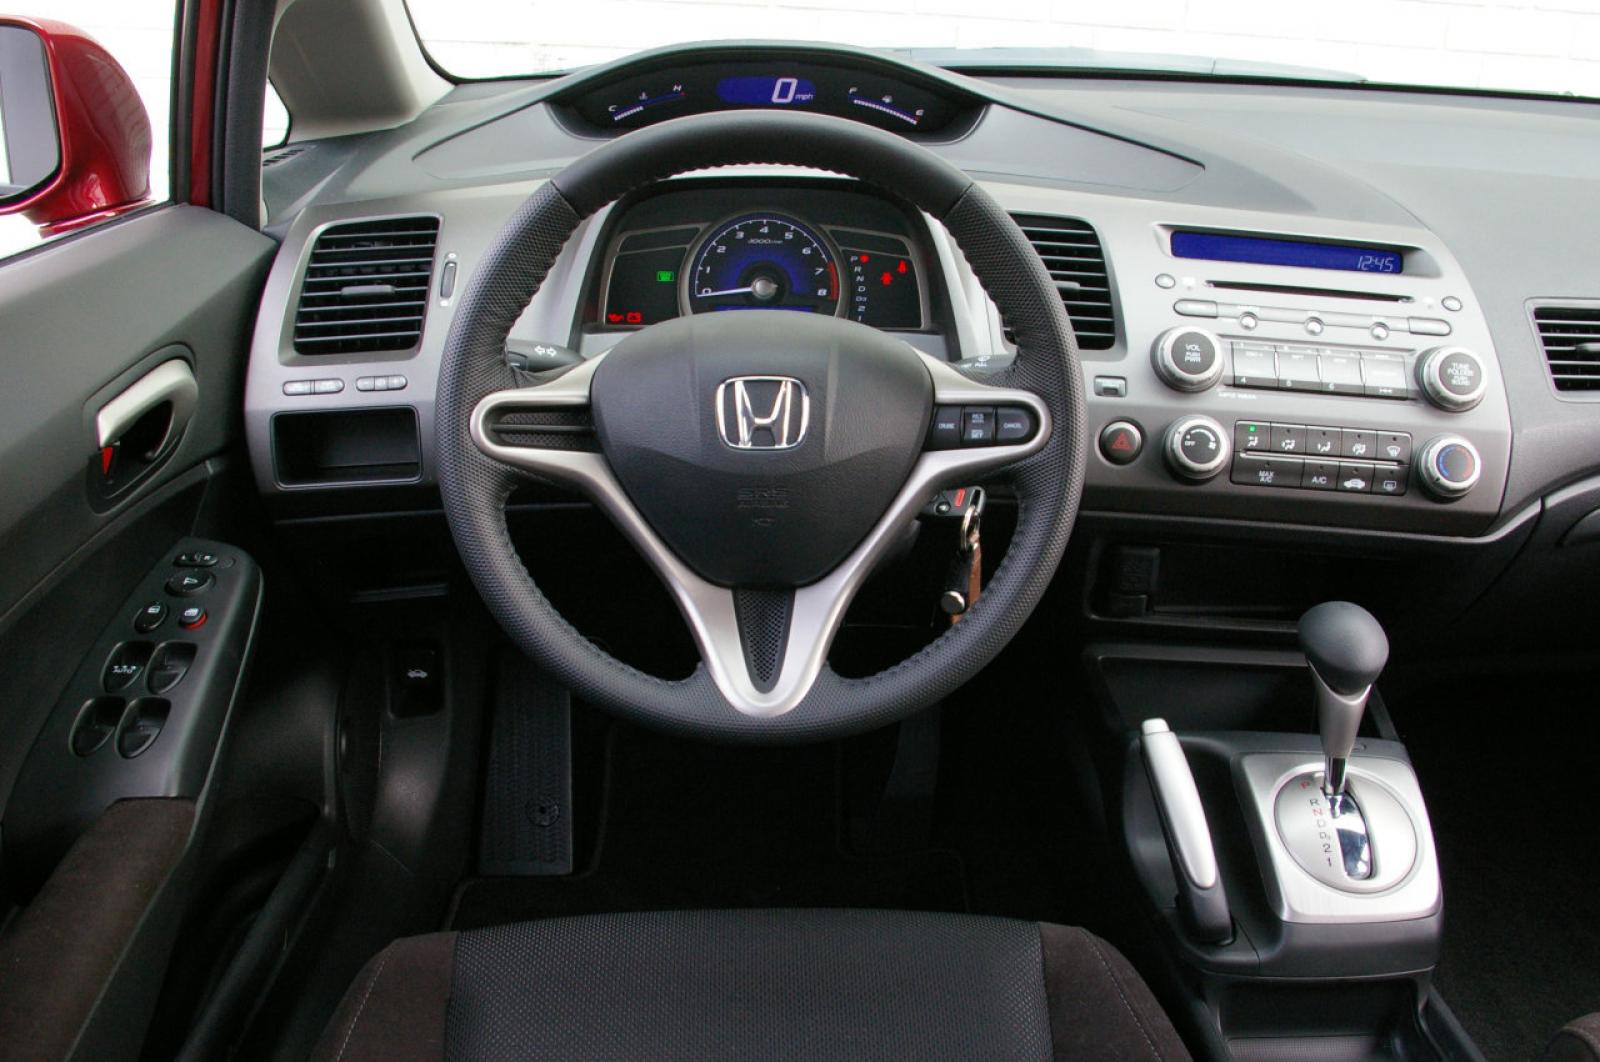 Honda v панель. Honda Civic 2008 салон. Honda Civic 8 Interior. Honda Civic 2010 комплектация. Honda Civic 2007 салон.